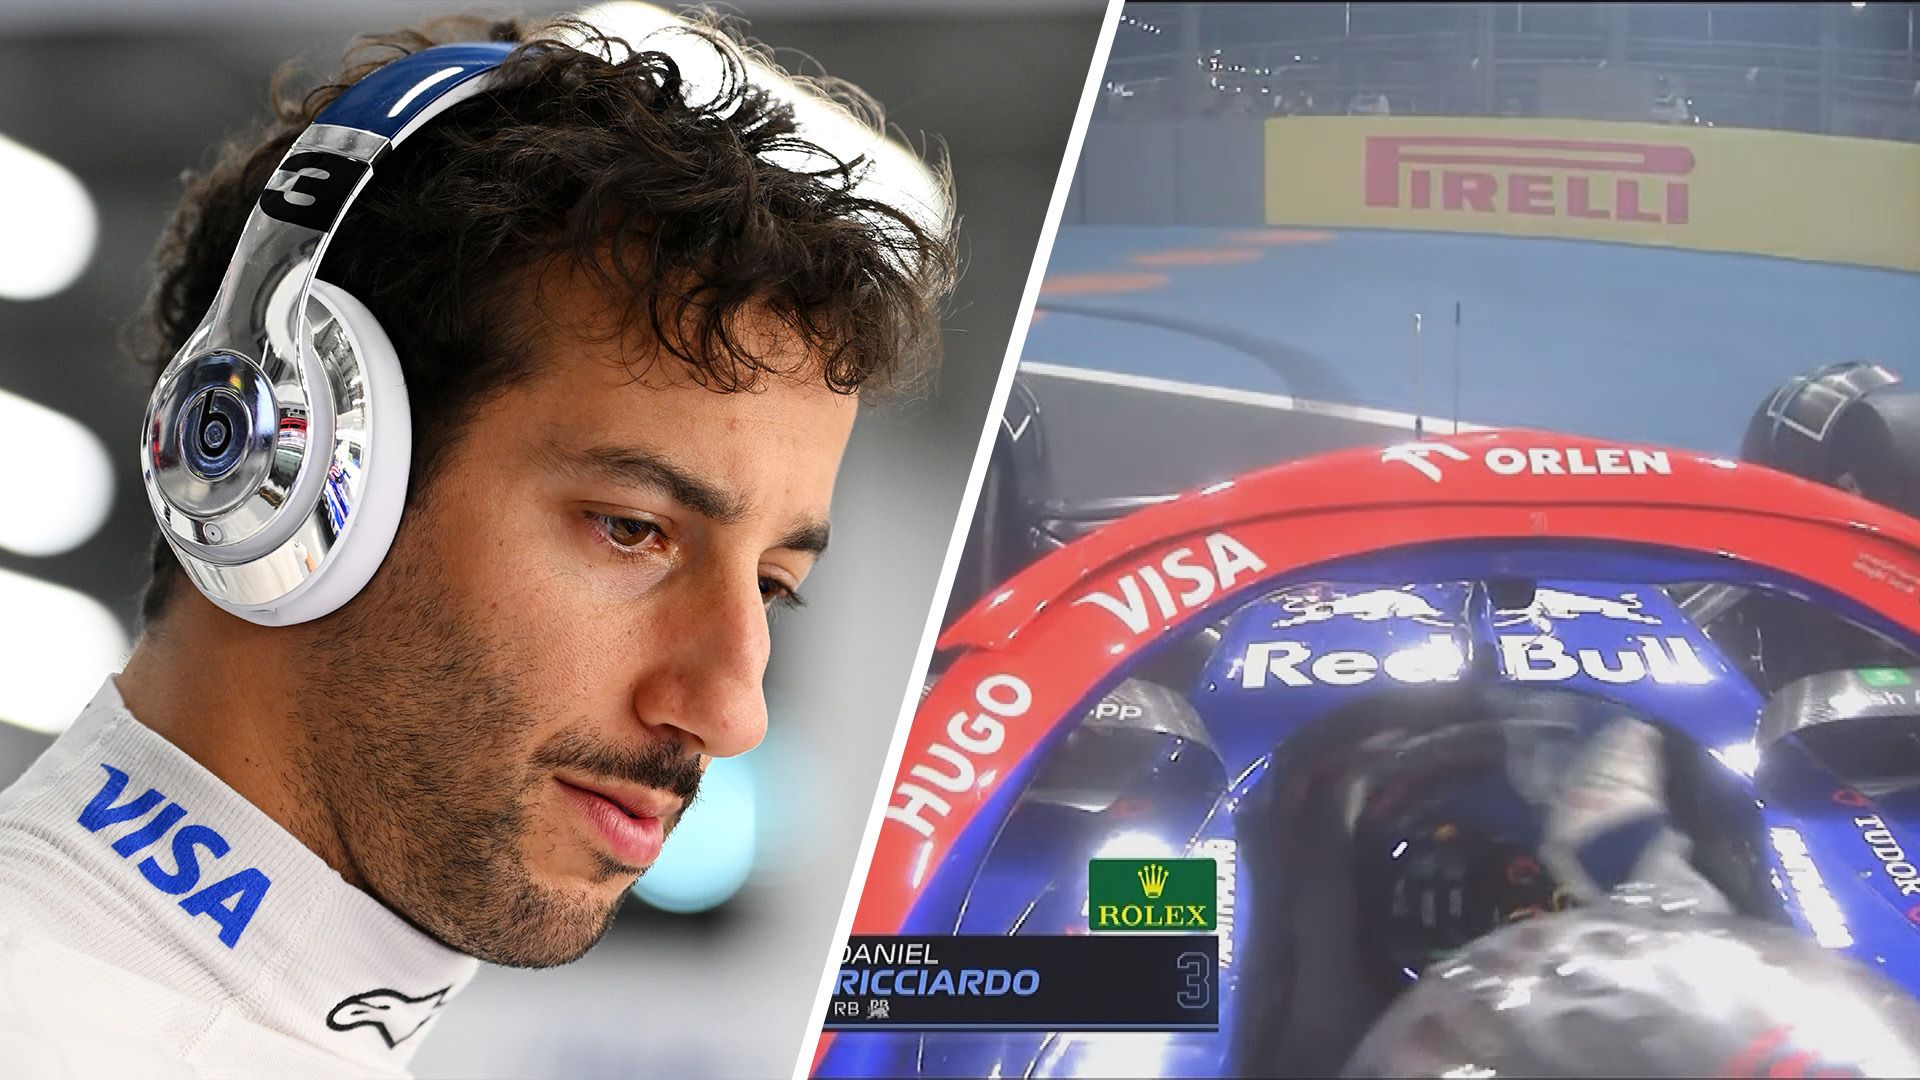 Daniel Ricciardo spun on his own late in the Saudi Arabian Grand Prix.